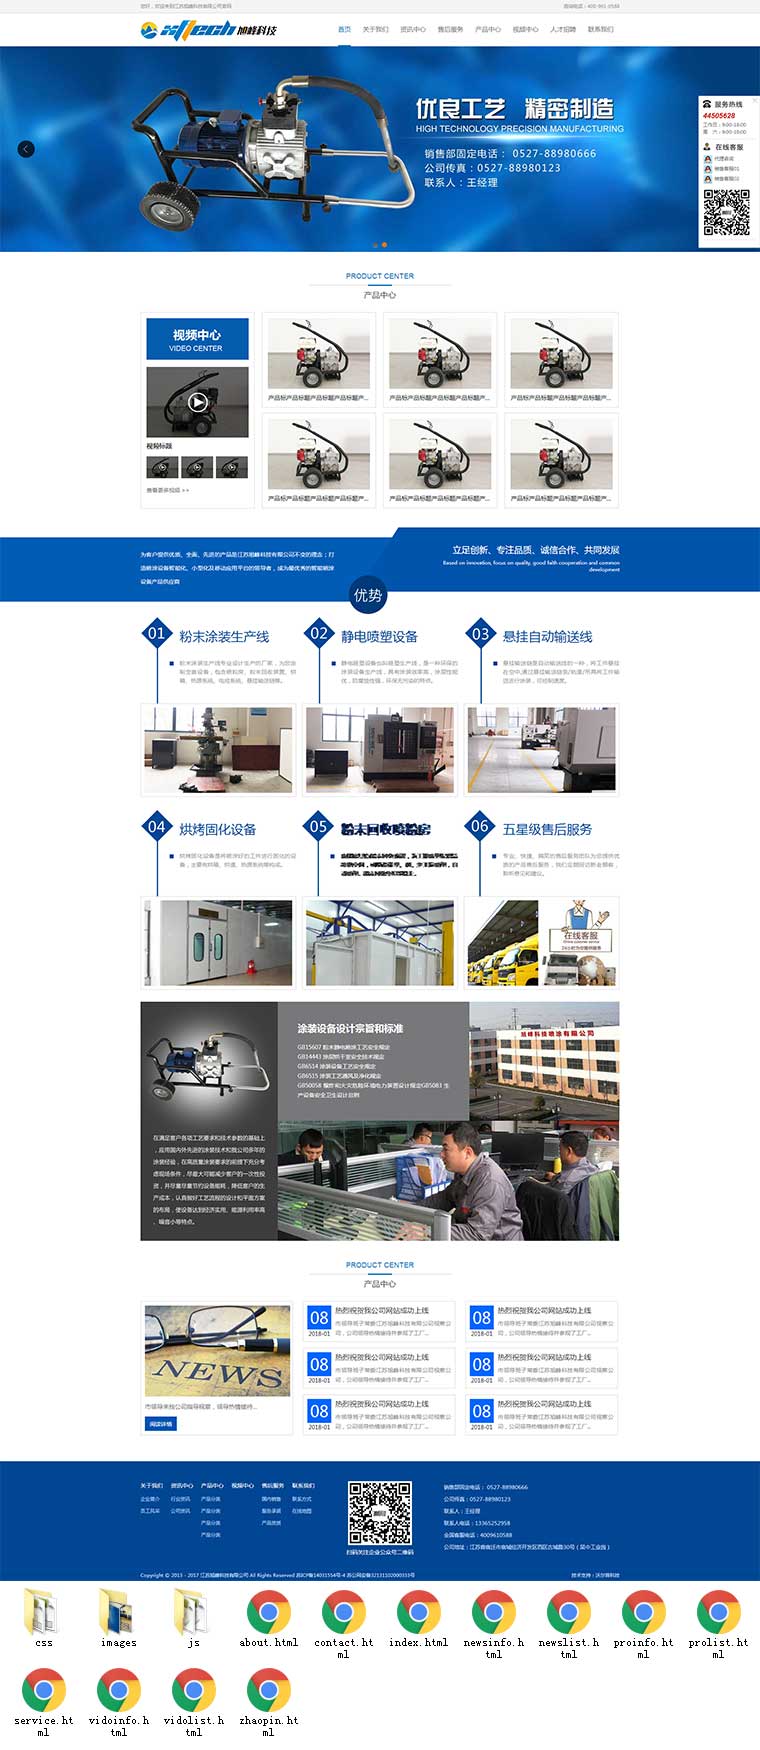 蓝色大气的机械设备自动化生产制造企业网站模板